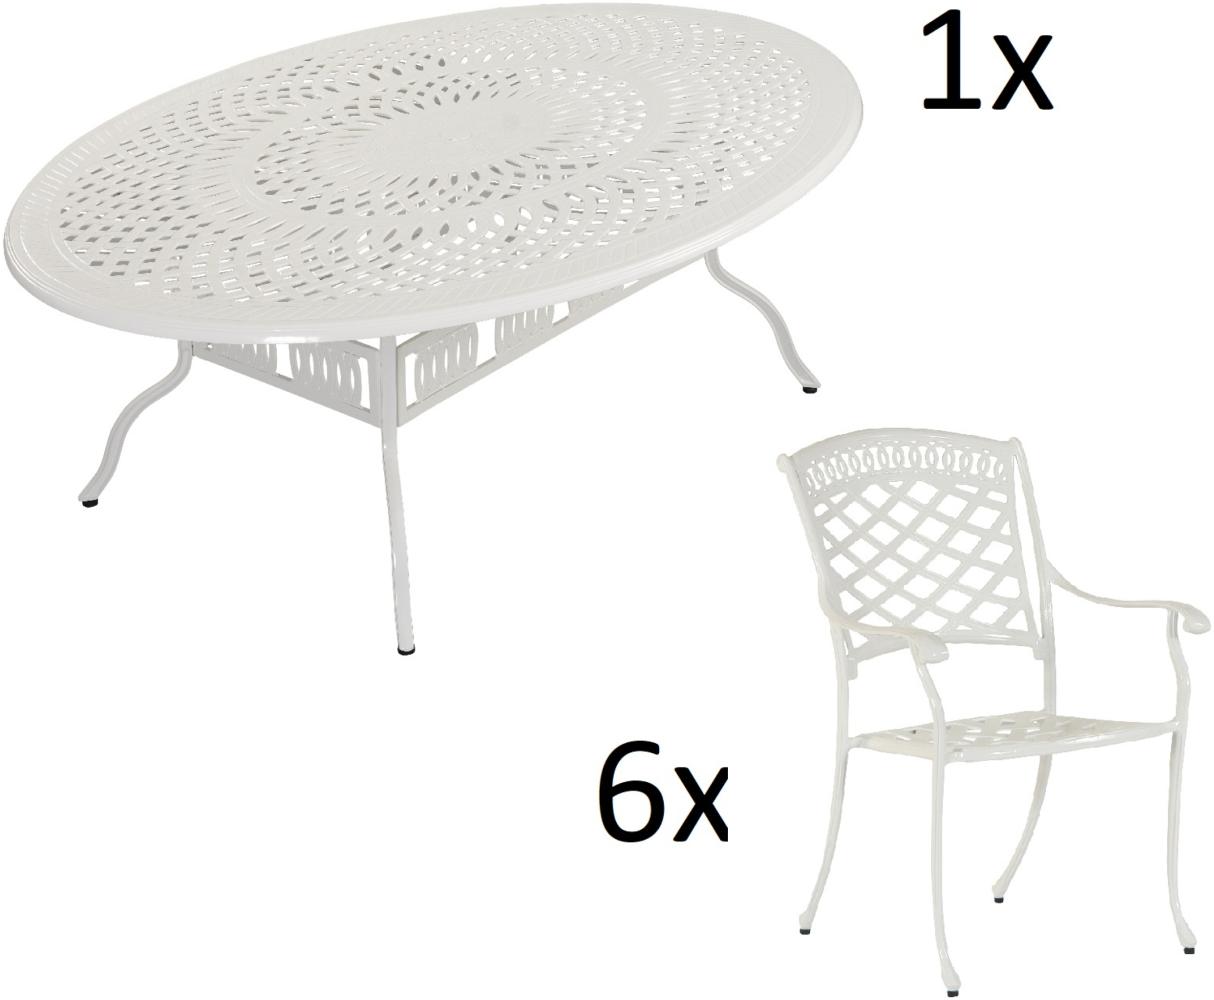 Inko 7-teilige Sitzgruppe Alu-Guss weiß Tisch oval 216x152x74 cm cm mit 6 Sesseln Tisch 216x152 cm mit 6x Sessel Urban Bild 1